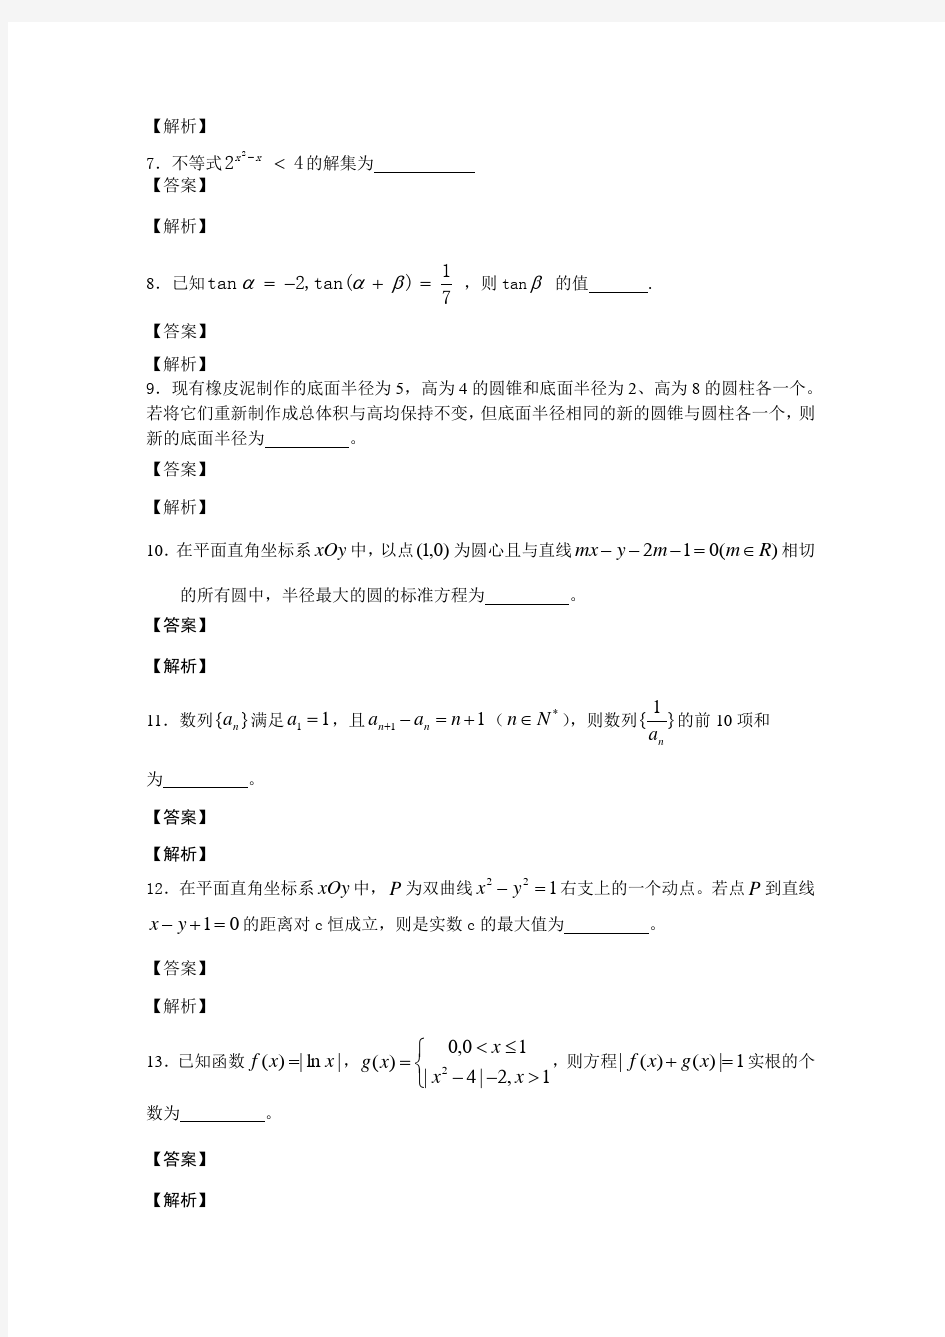 2015年江苏高考数学试卷(含附加题)